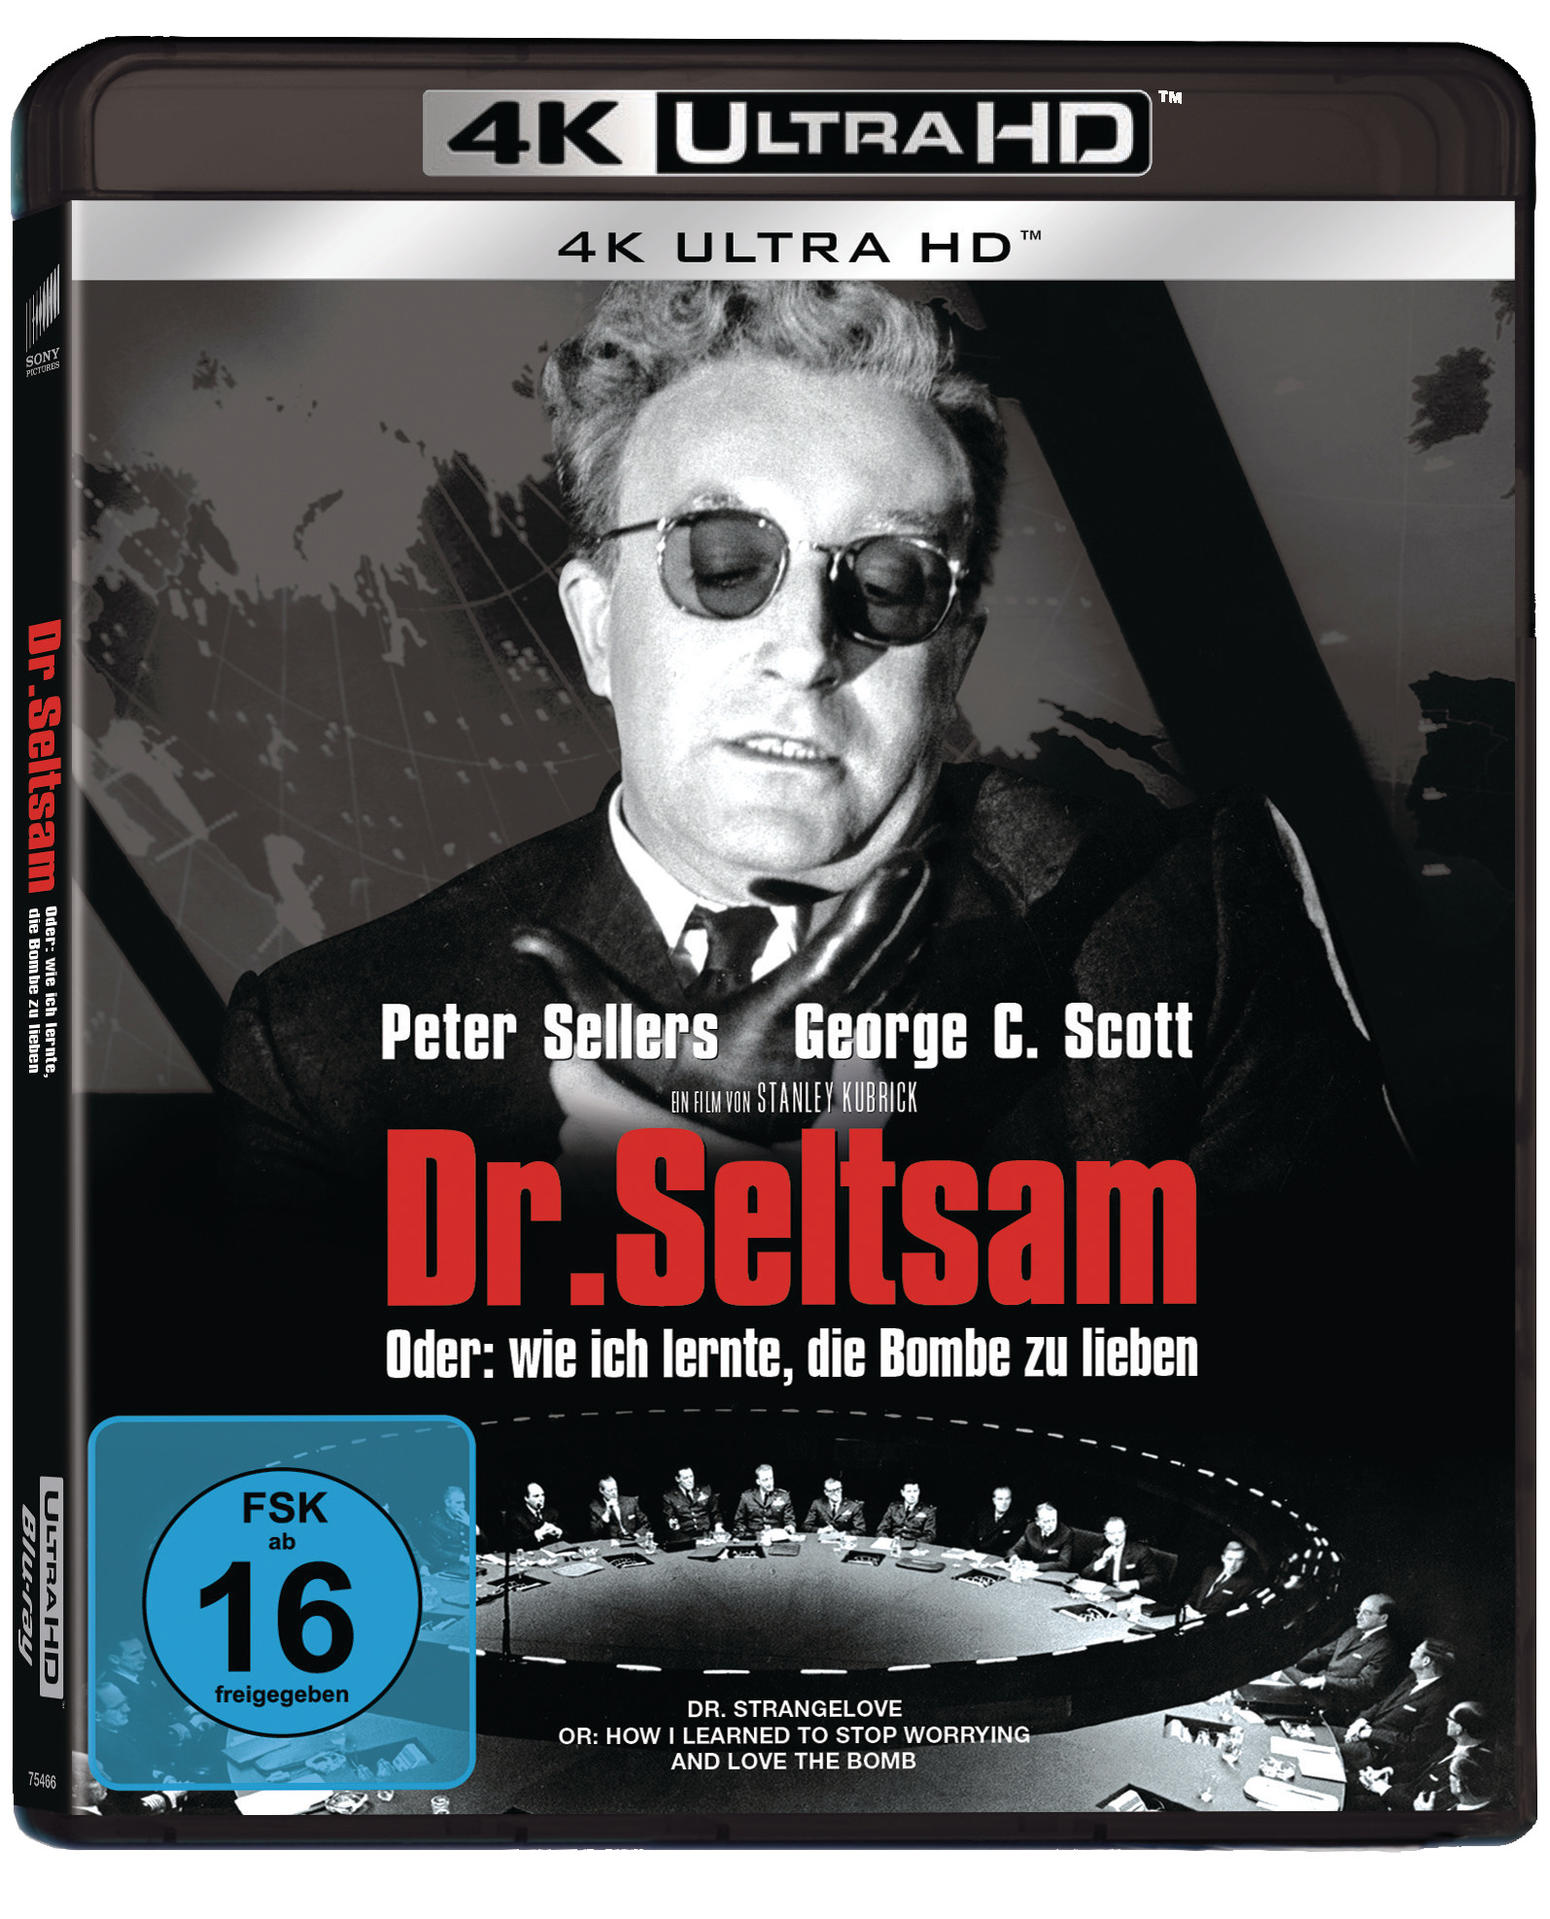 Dr. Seltsam Bombe wie lernte, HD oder Blu-ray zu Ultra ich die 4K lieben